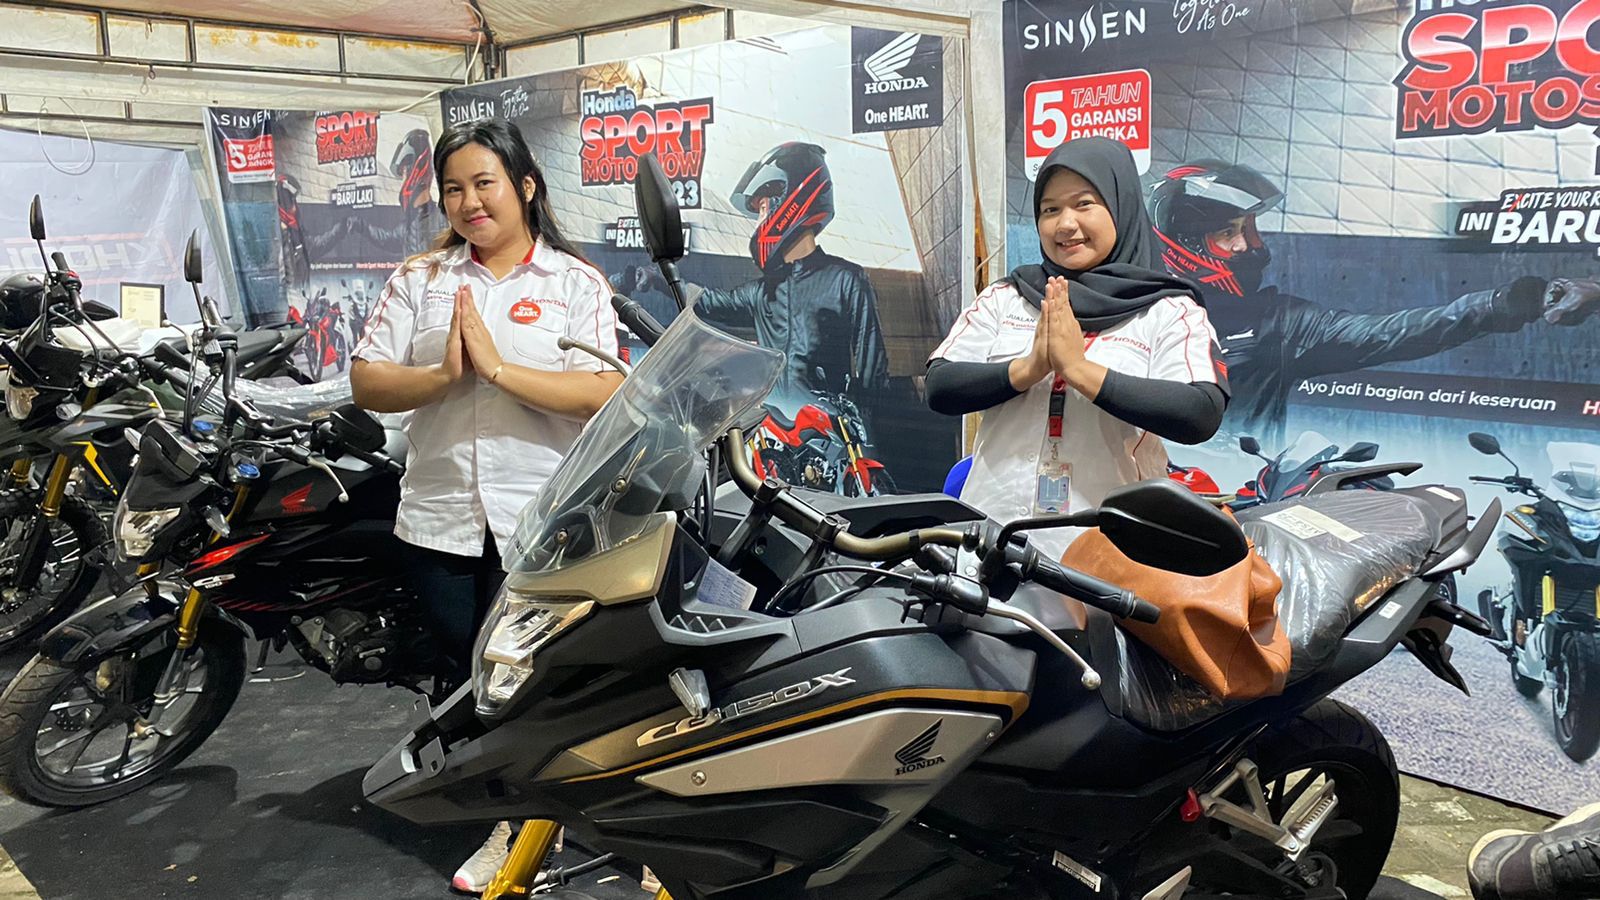 Hasil Survei Jakpat, Sepeda Motor Honda Menjadi Produk Terpecaya Pilihan Masyarakat Indonesia